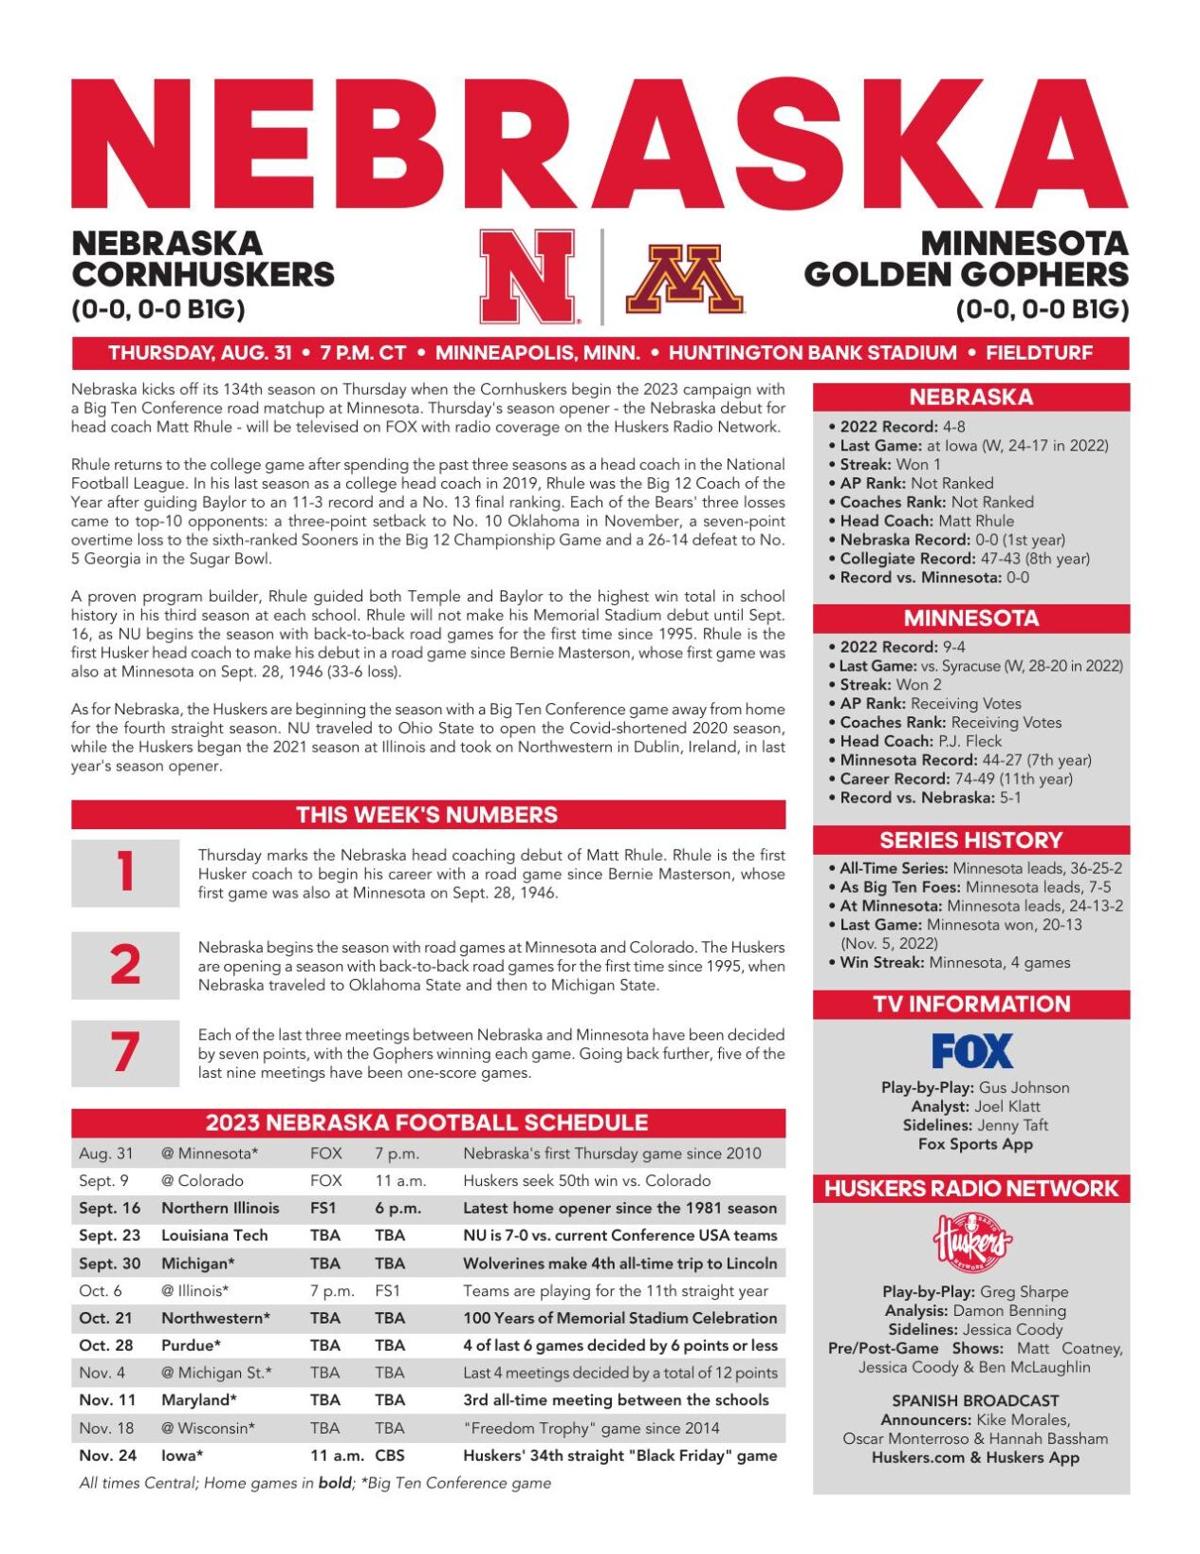 Click here for Nebraska's depth chart against Minnesota